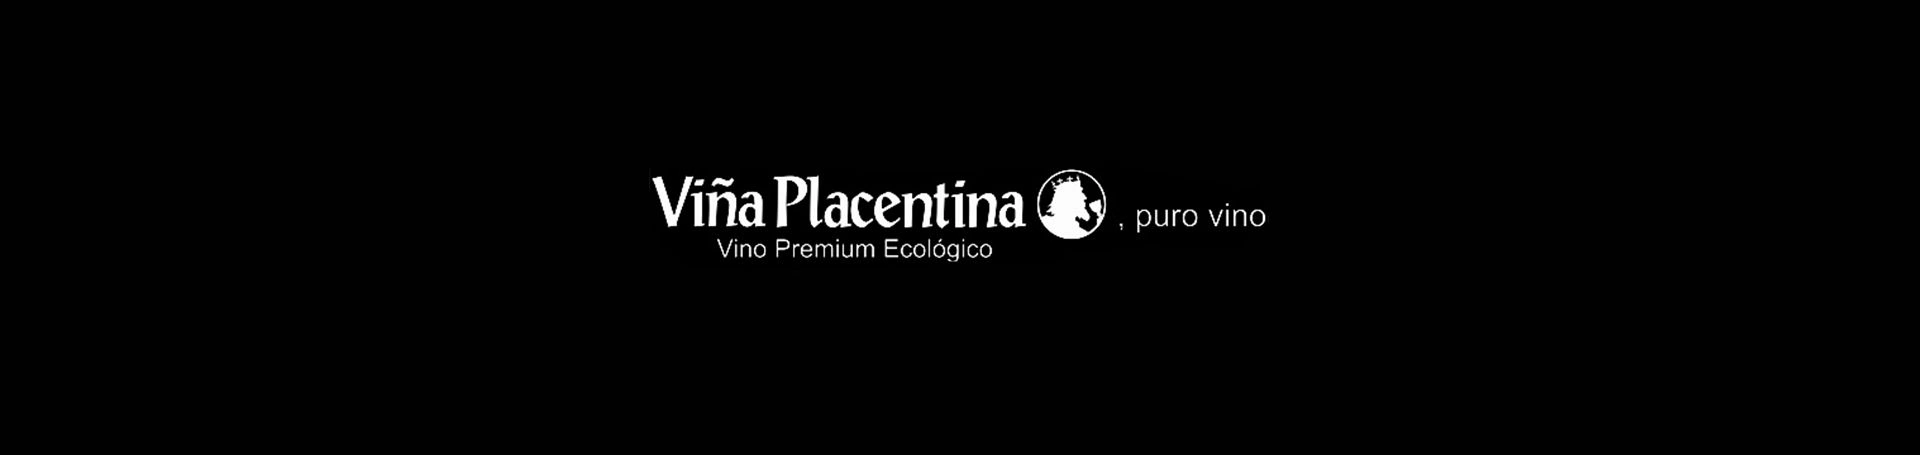 Viña Placentina , nuevo cliente Marketing Outsourcing.